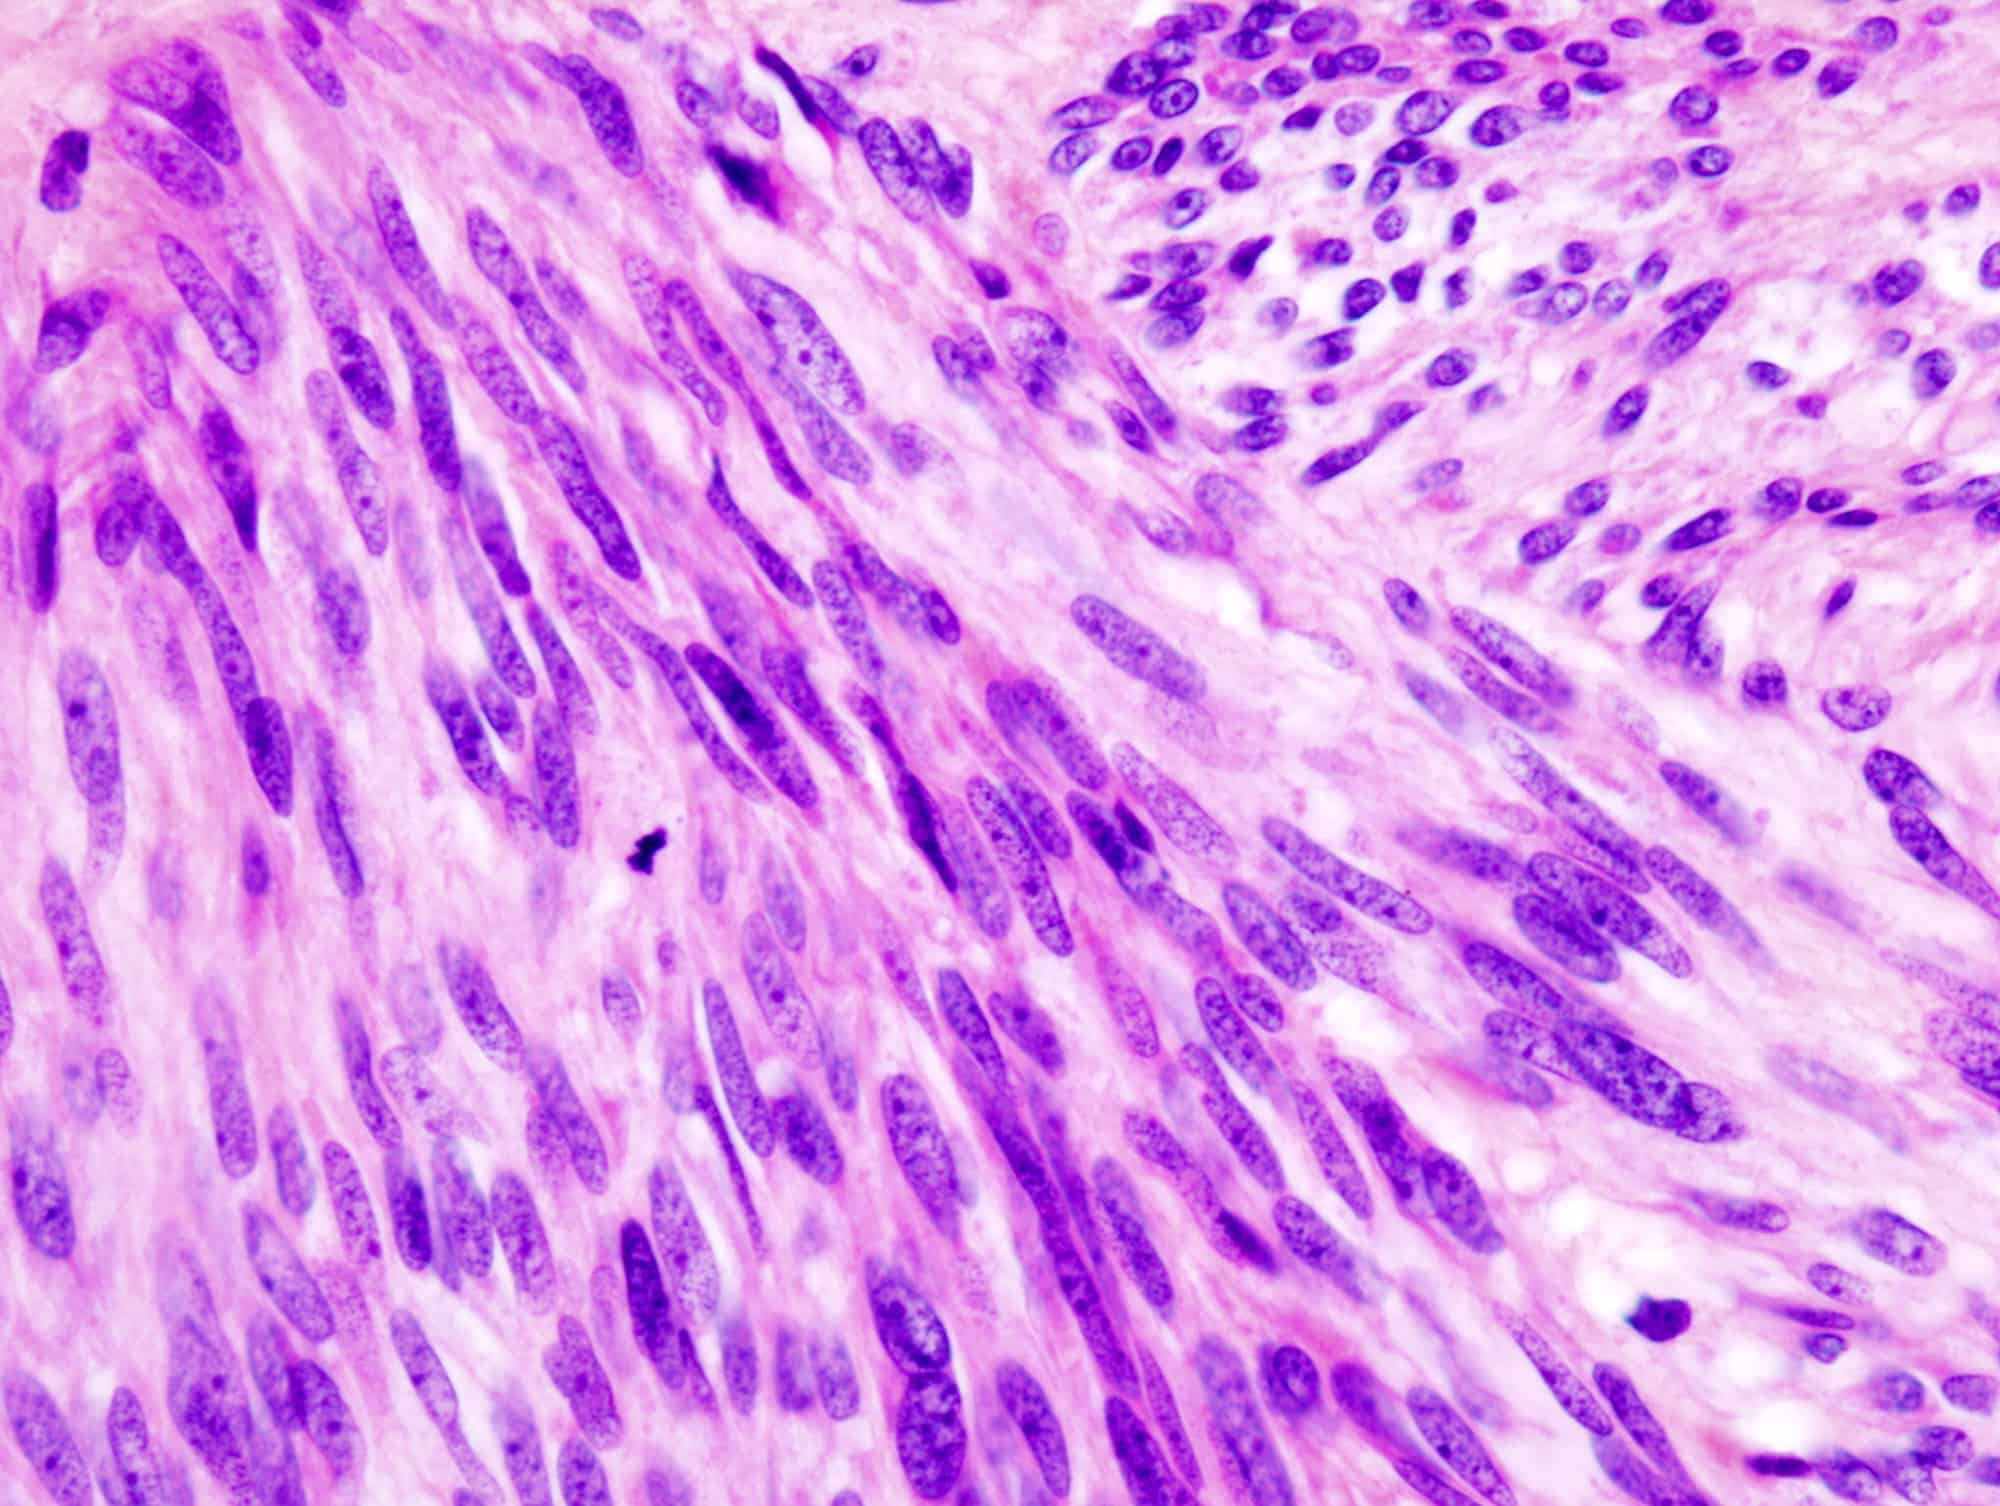 Gastrointestinal Stromal Tumors